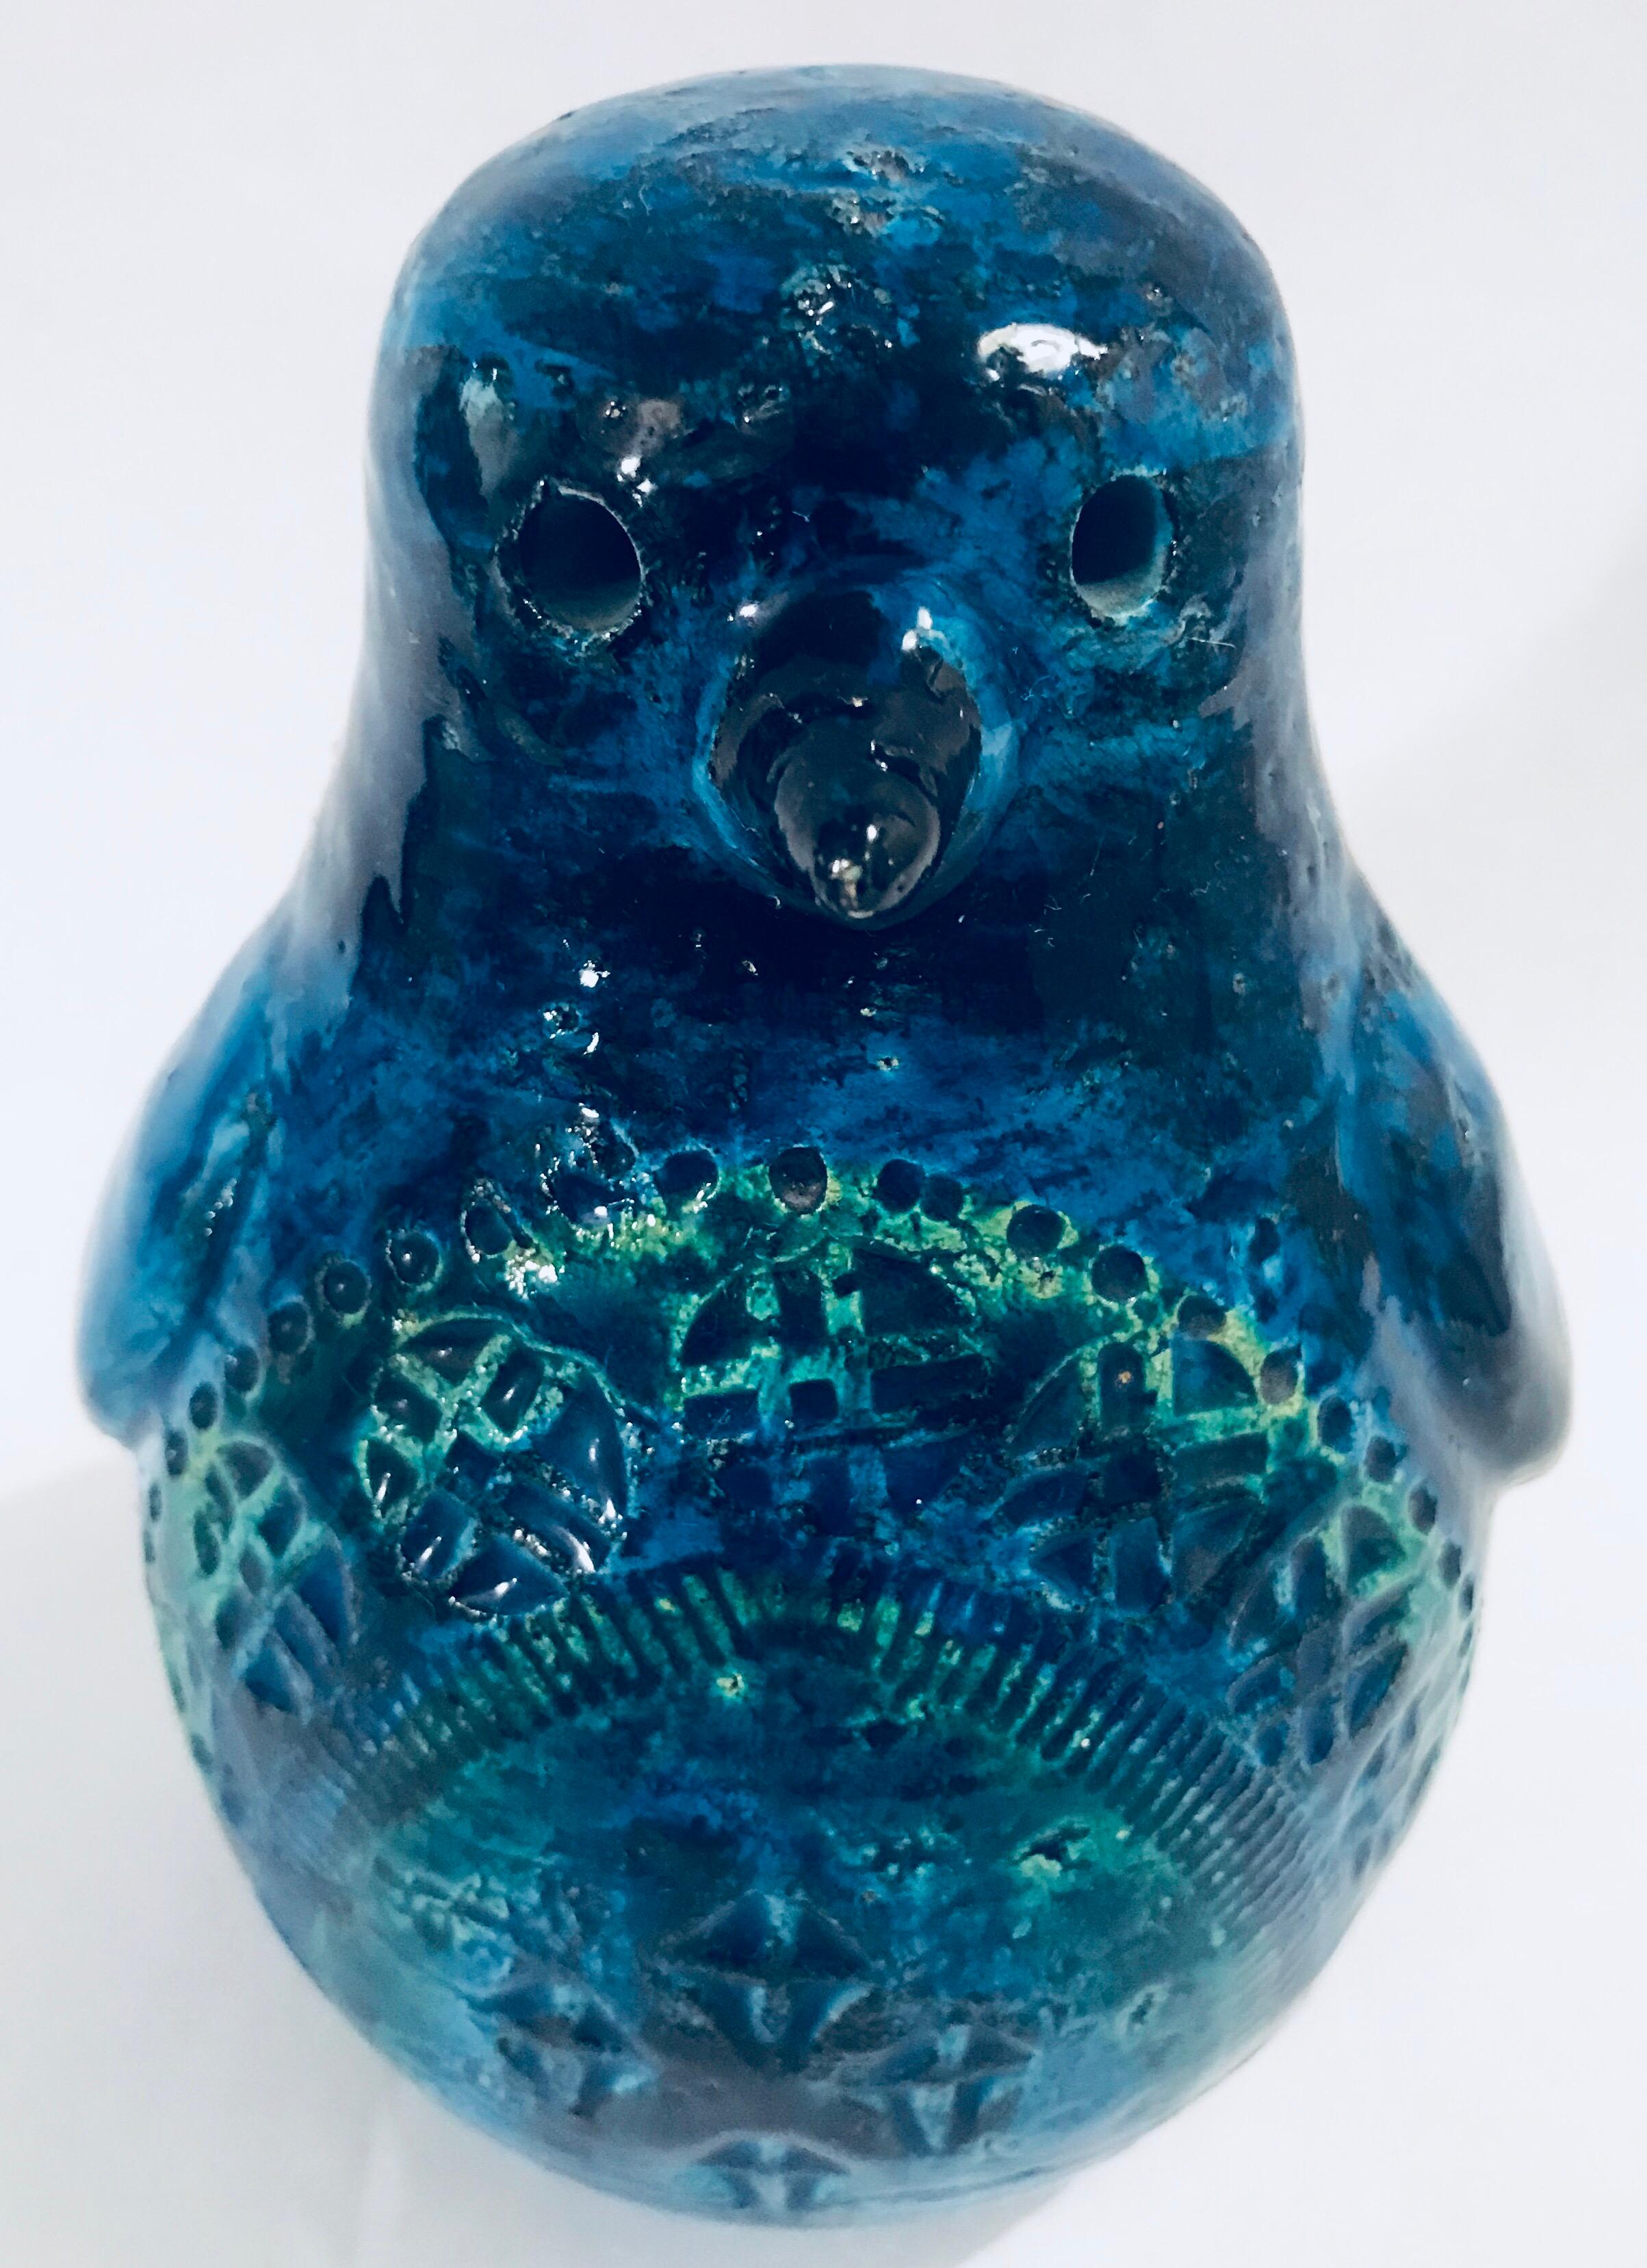 Italian Bitossi Raymor Ceramic Penguin by Aldo Londi